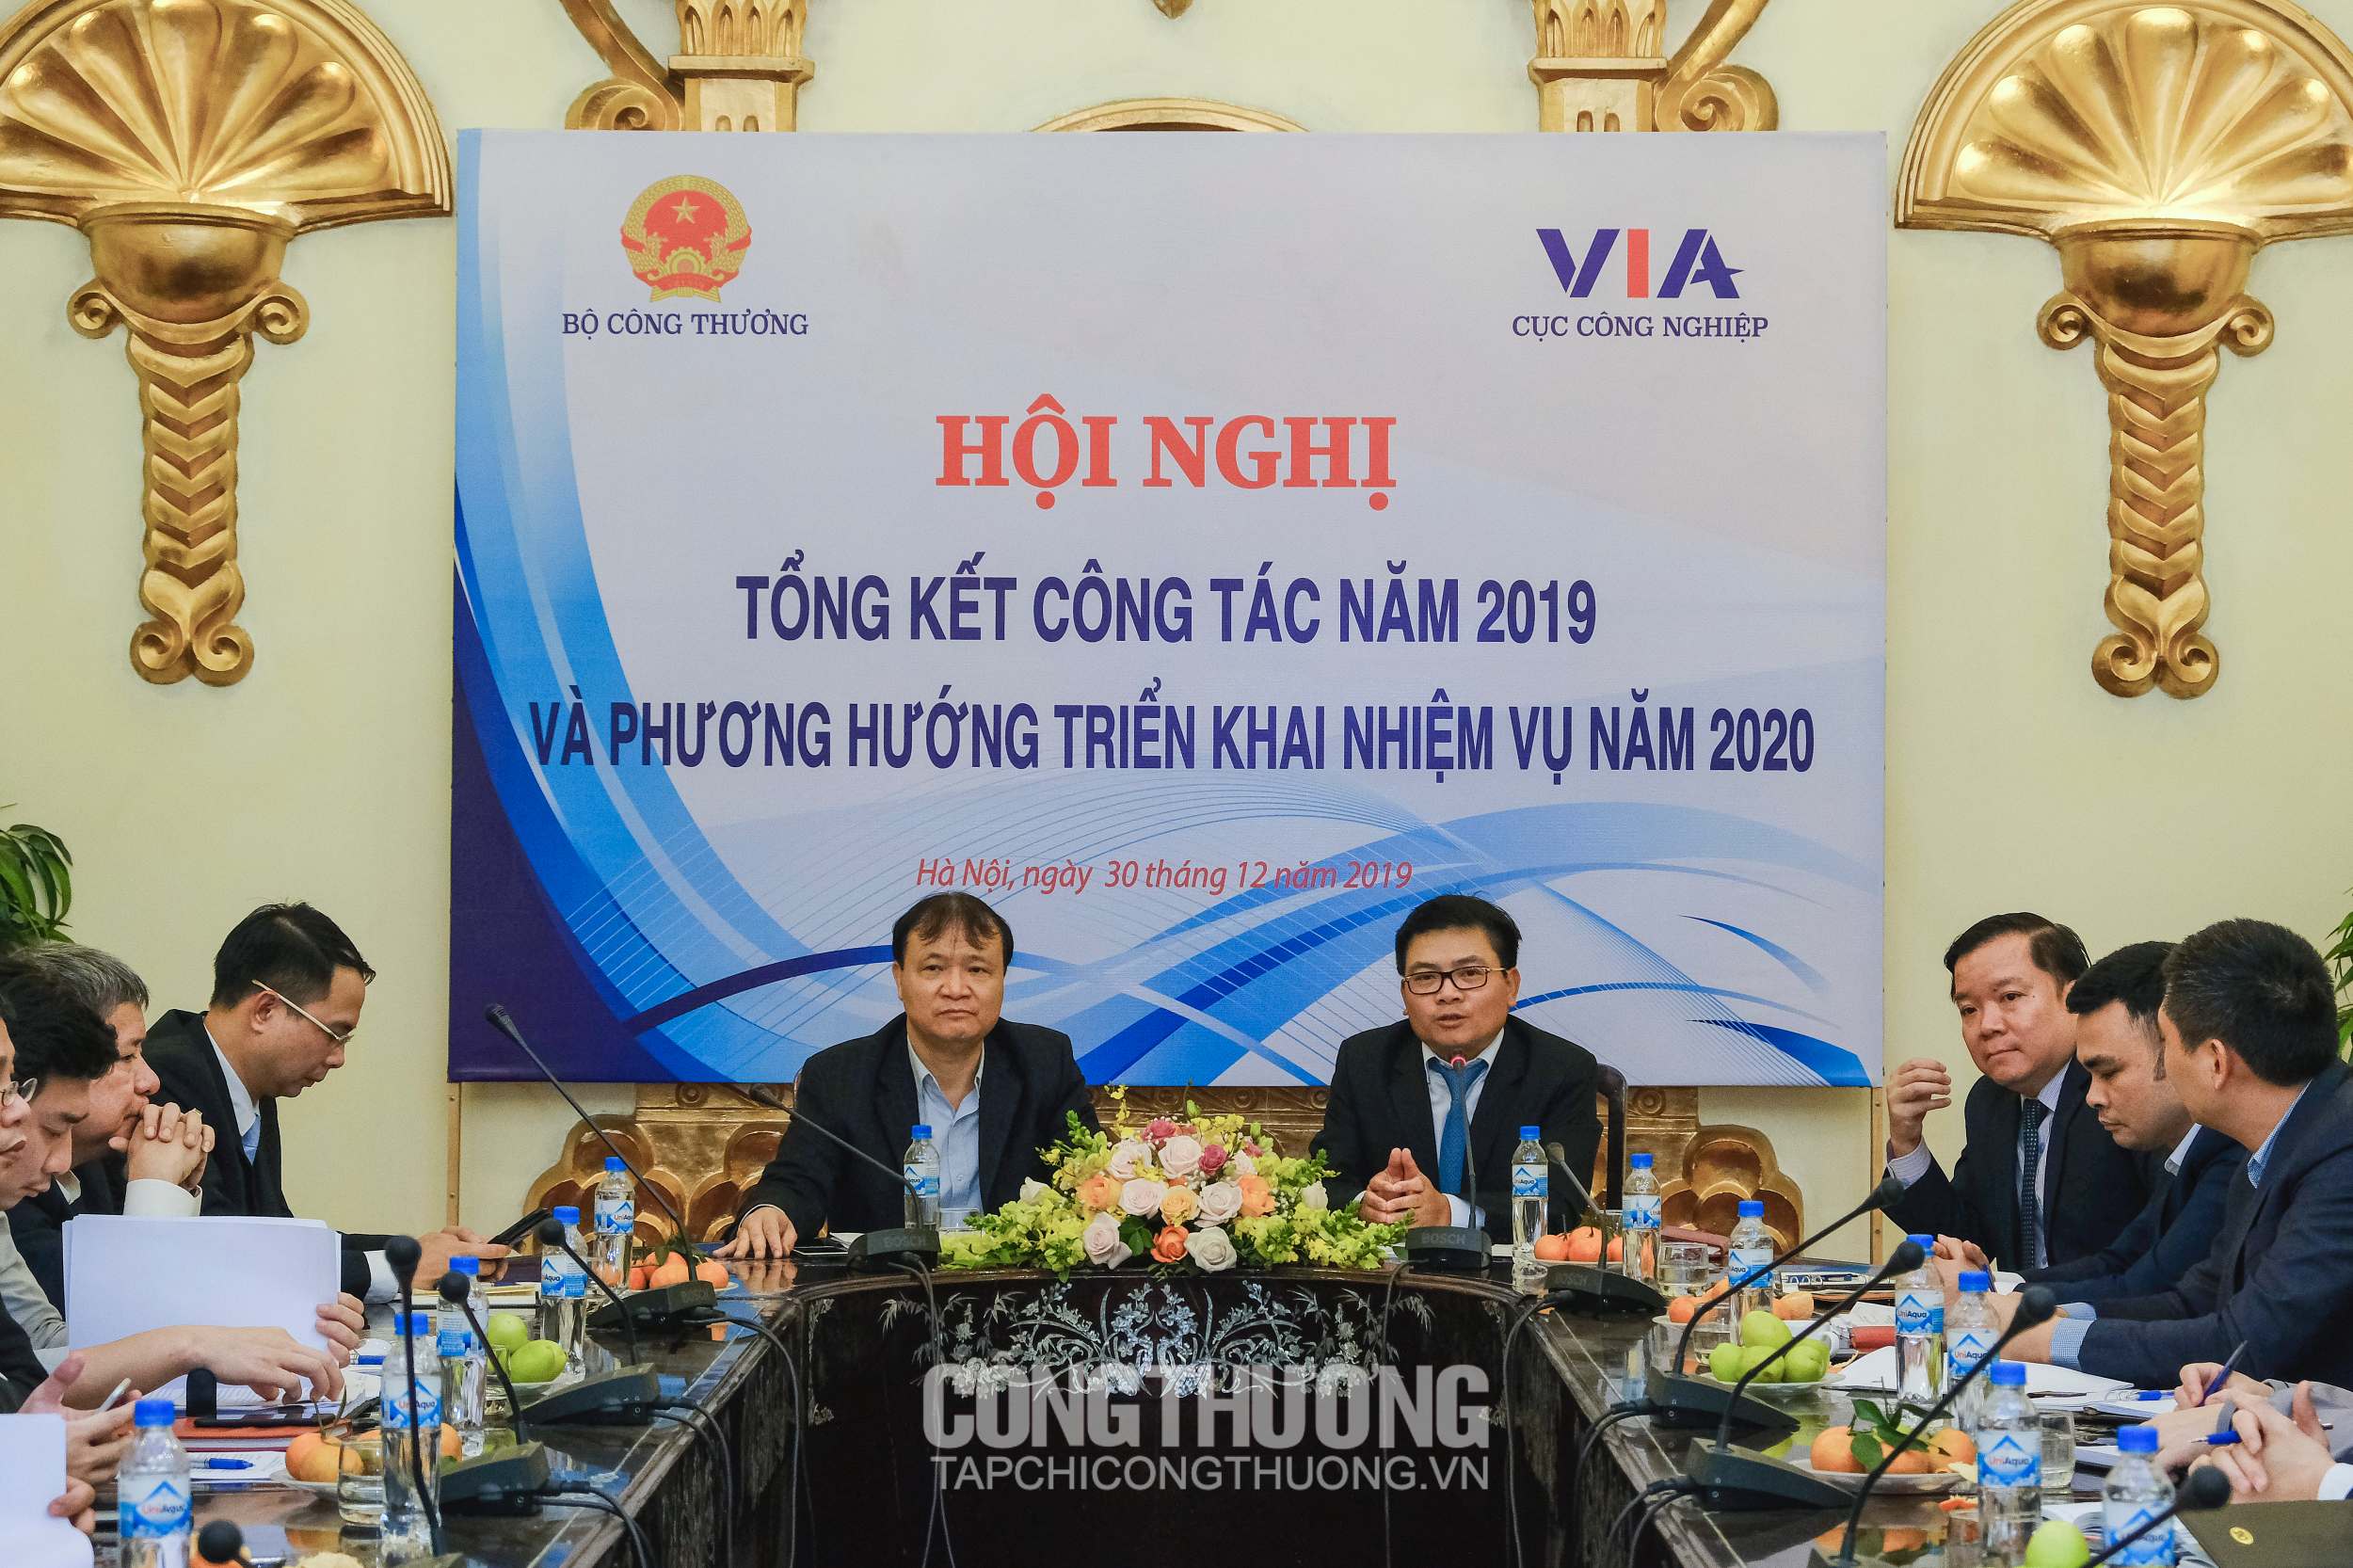 Thứ trưởng Bộ Công Thương Đỗ Thắng Hải (trái) và Cục trưởng Trương Thanh Hoài (phải) chủ trì Hội nghị tổng kết công tác năm 2019 và phương hướng triển khai nhiệm vụ năm 2020 của Cục công nghiệp